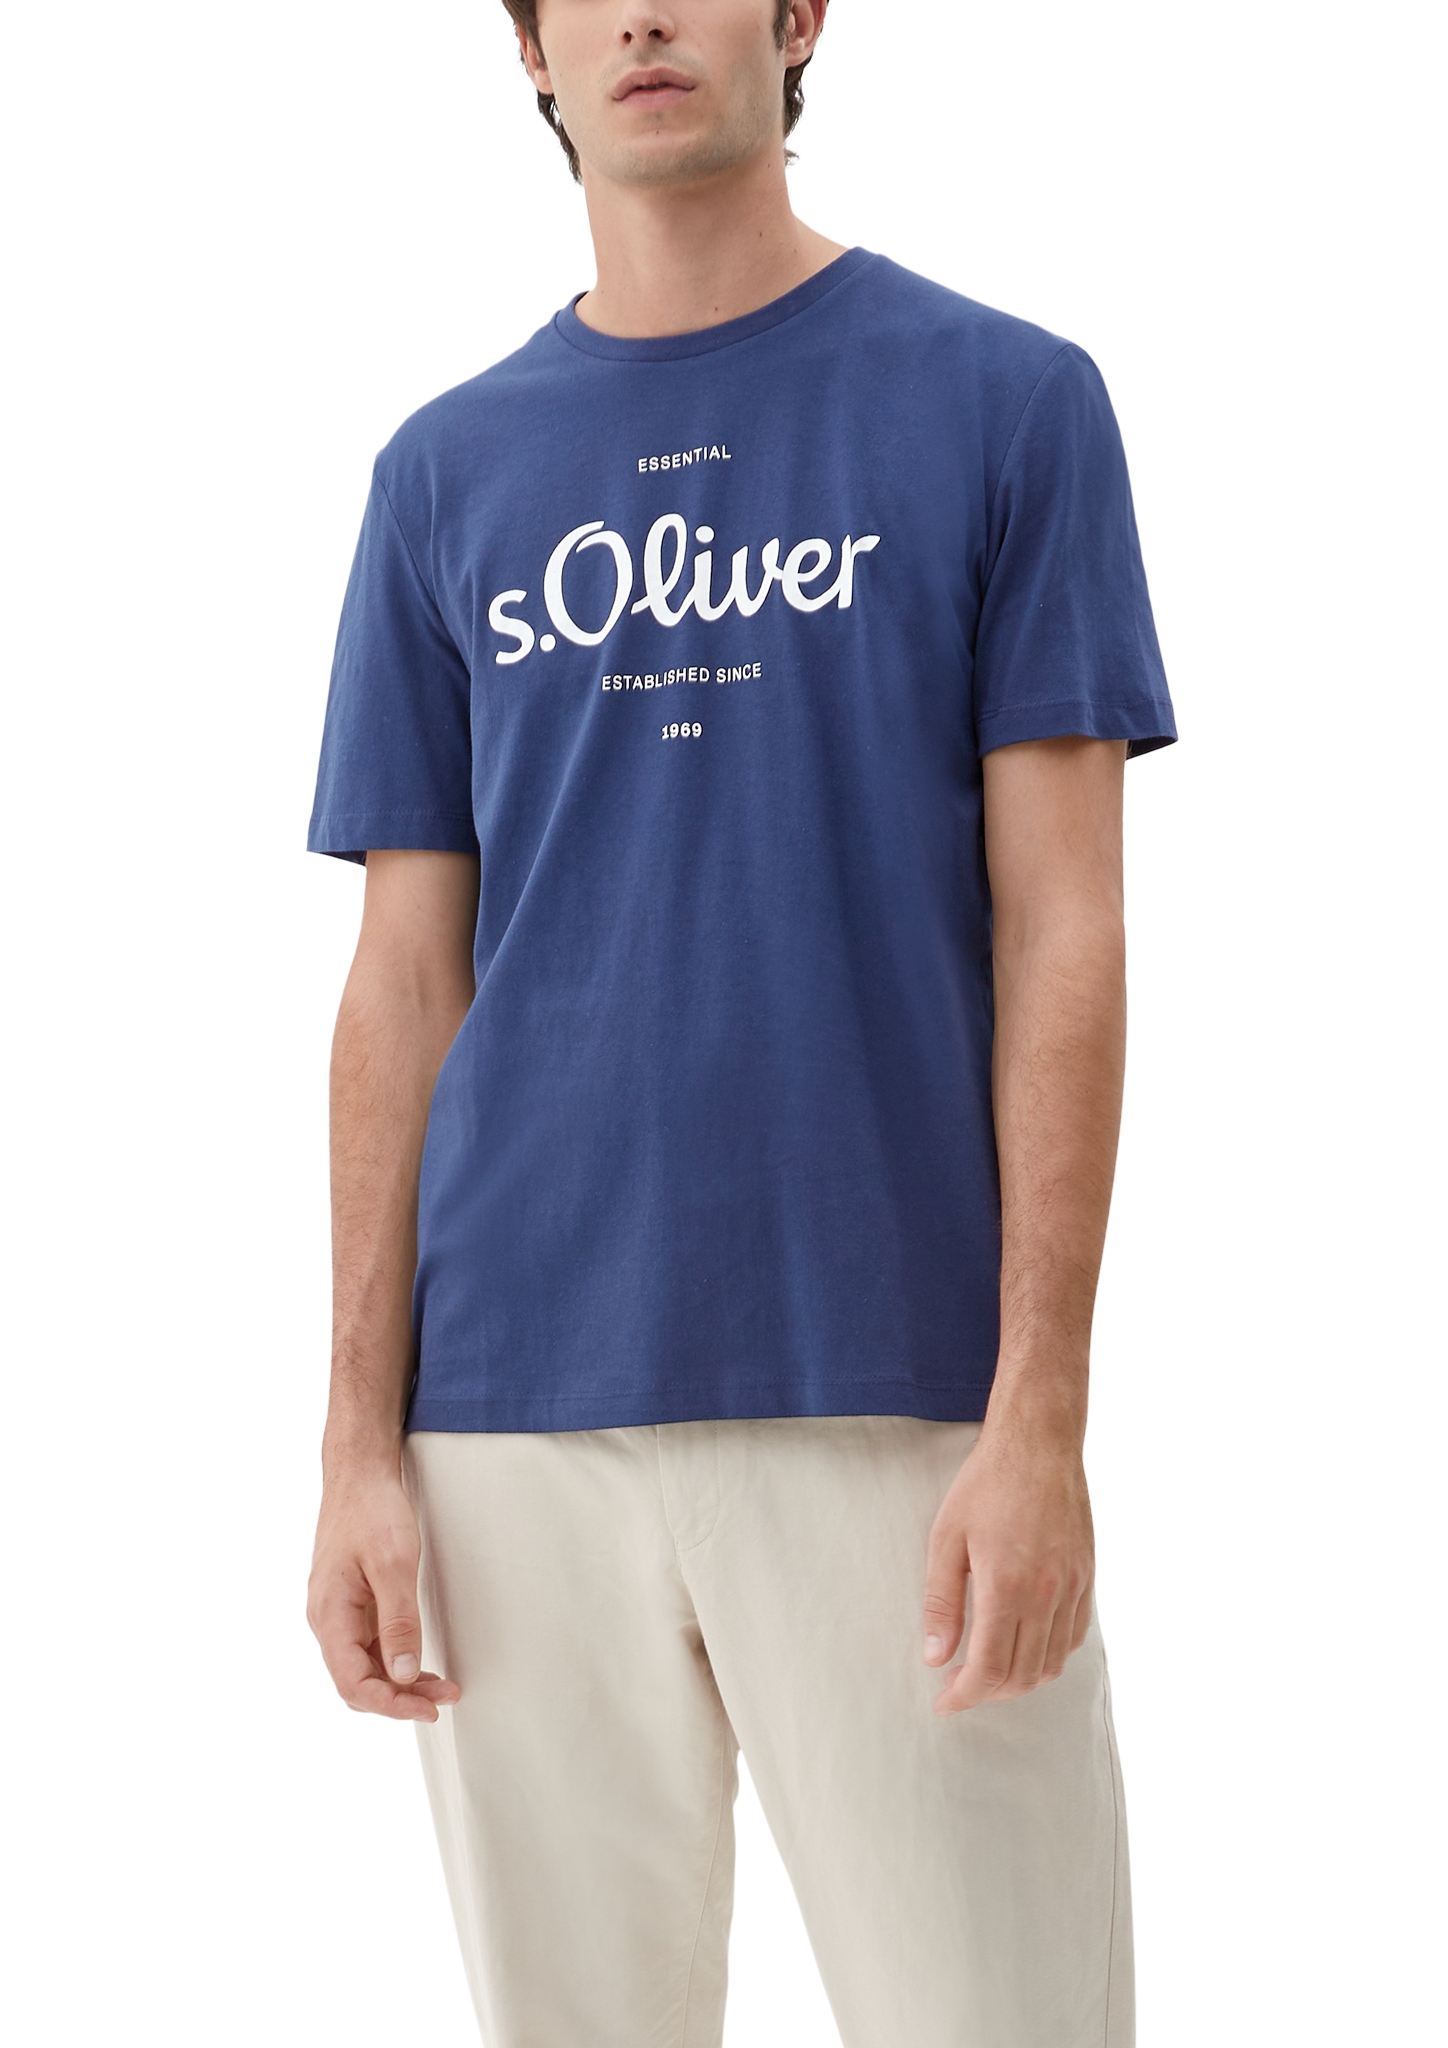 S.Oliver T-Shirt - Horsthemke